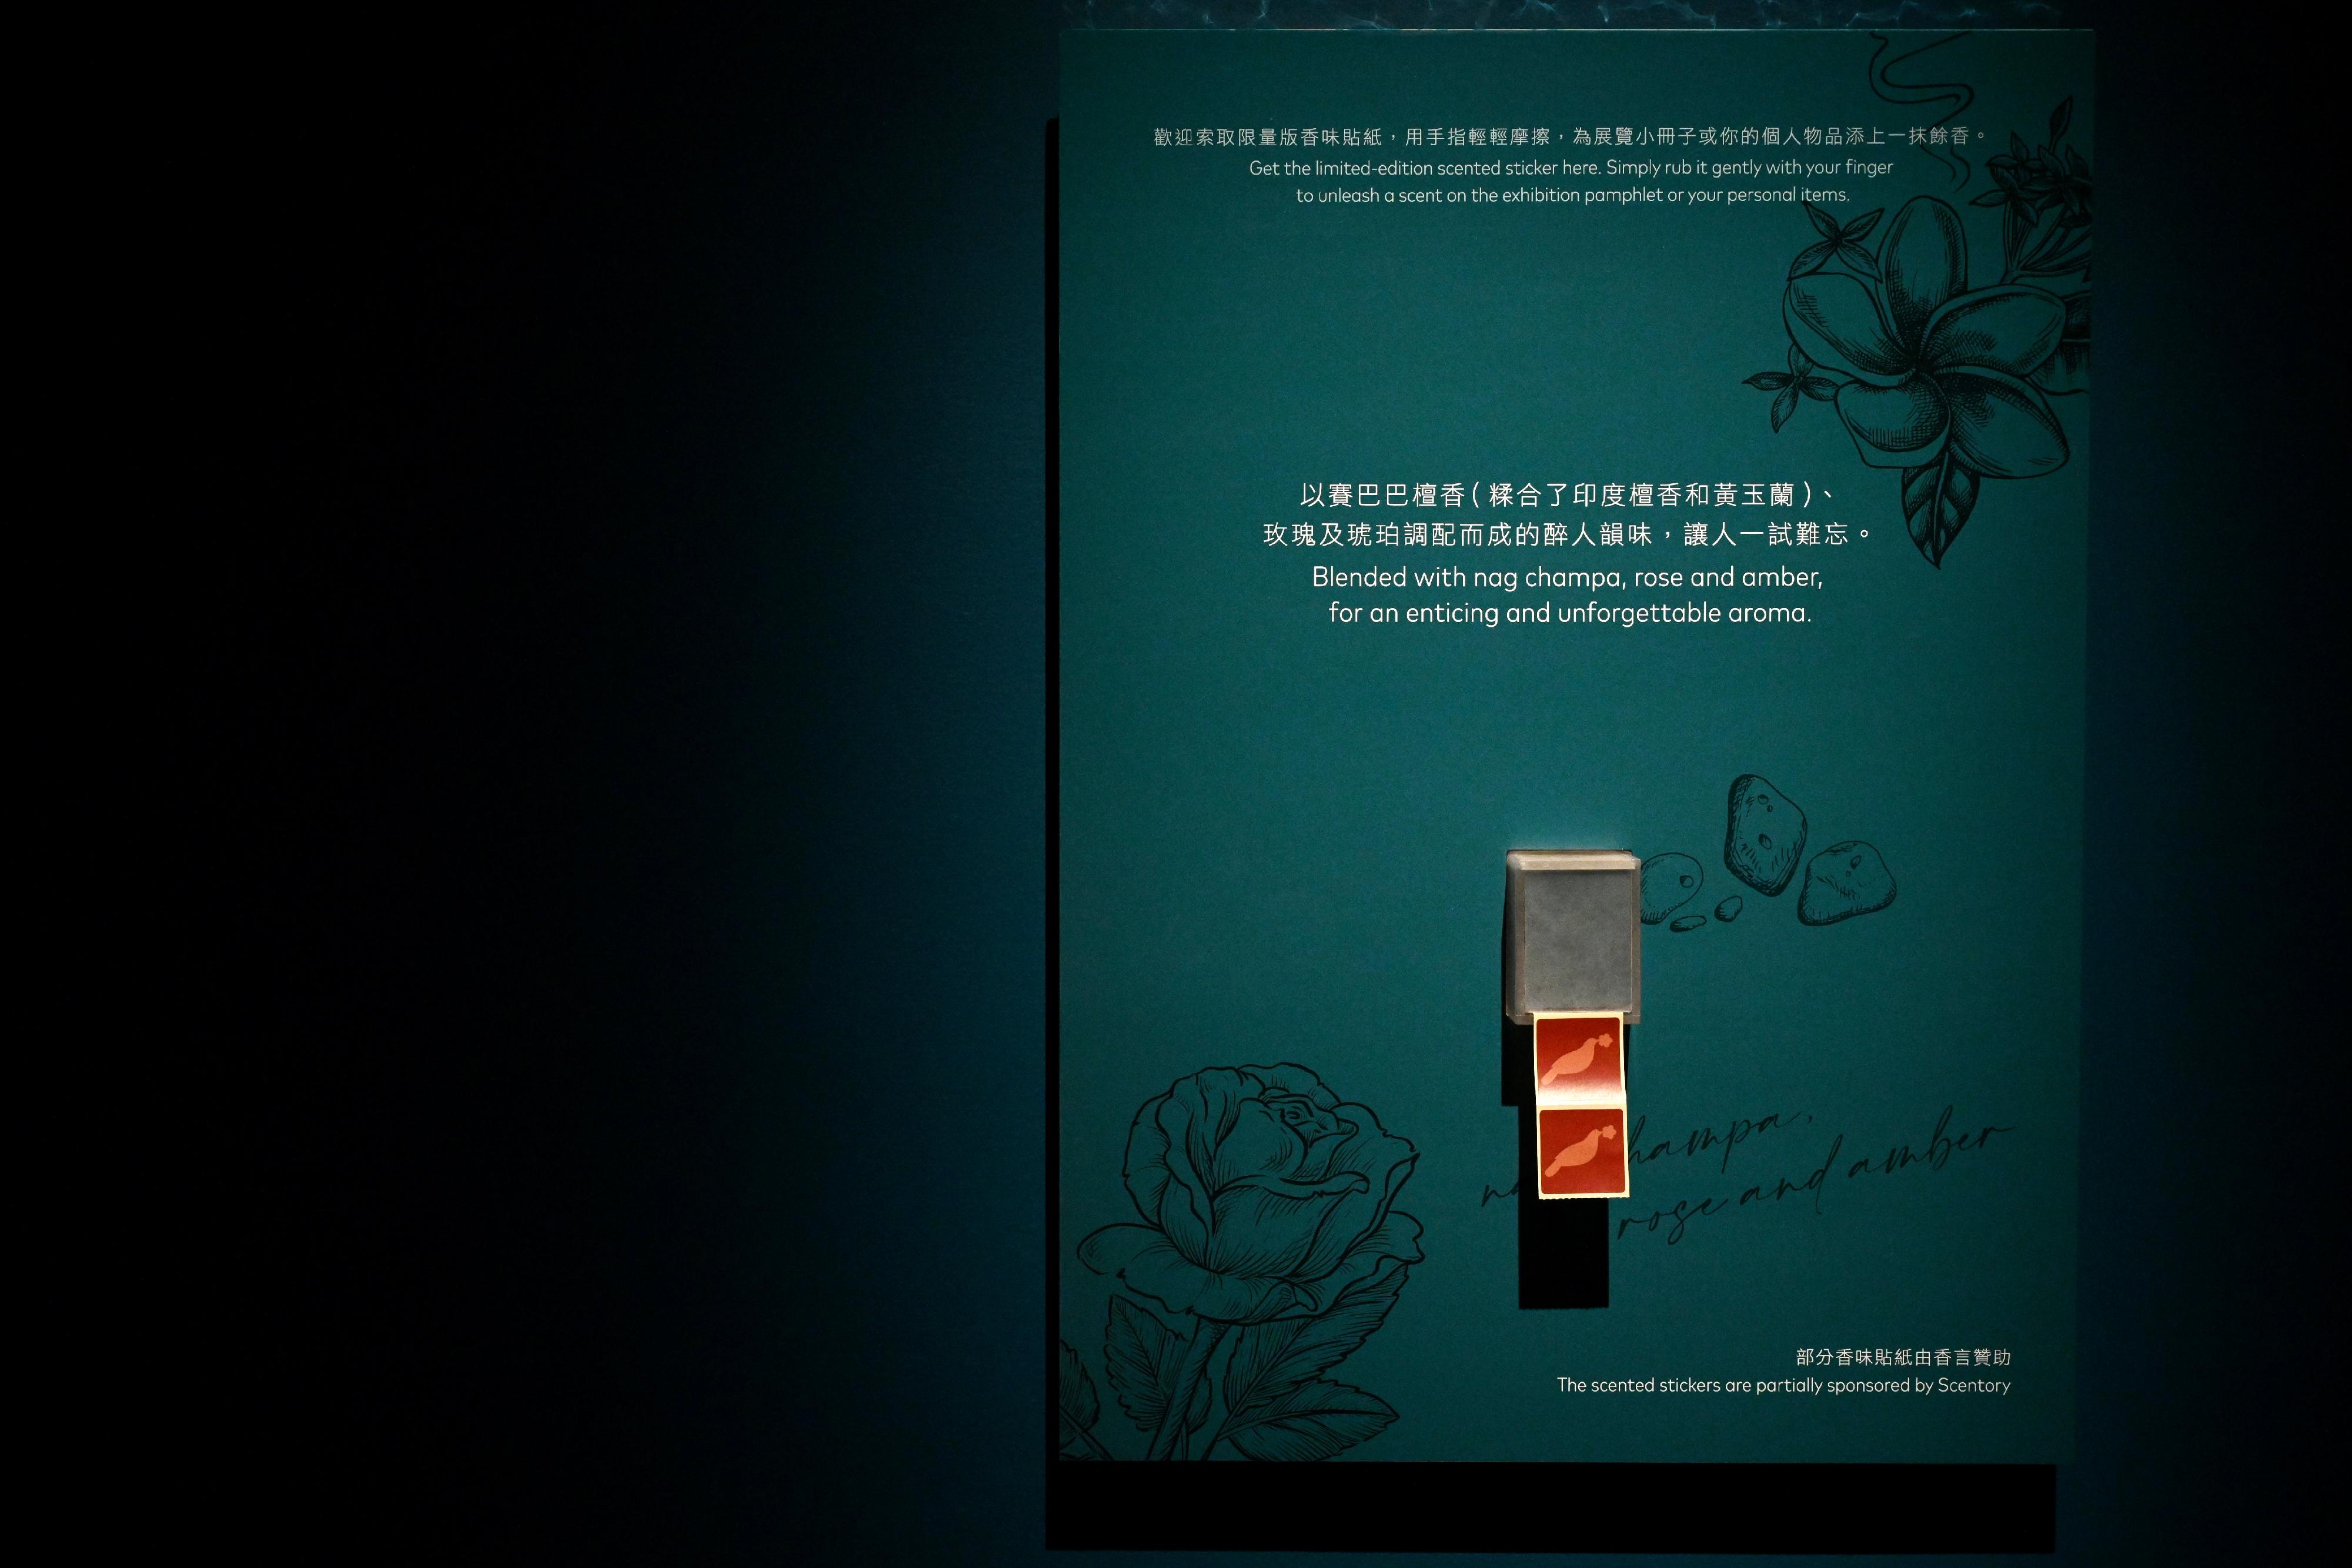 香港藝術館明日（六月三十日）起在香港藝術館舉行「好物有型——香港藝術館藏精品展」。展覽為不同展區調配了專屬香味，亦會在場內派發限量版香味貼紙，讓觀眾踏上一趟與別不同的個人專屬美感體驗之旅。


